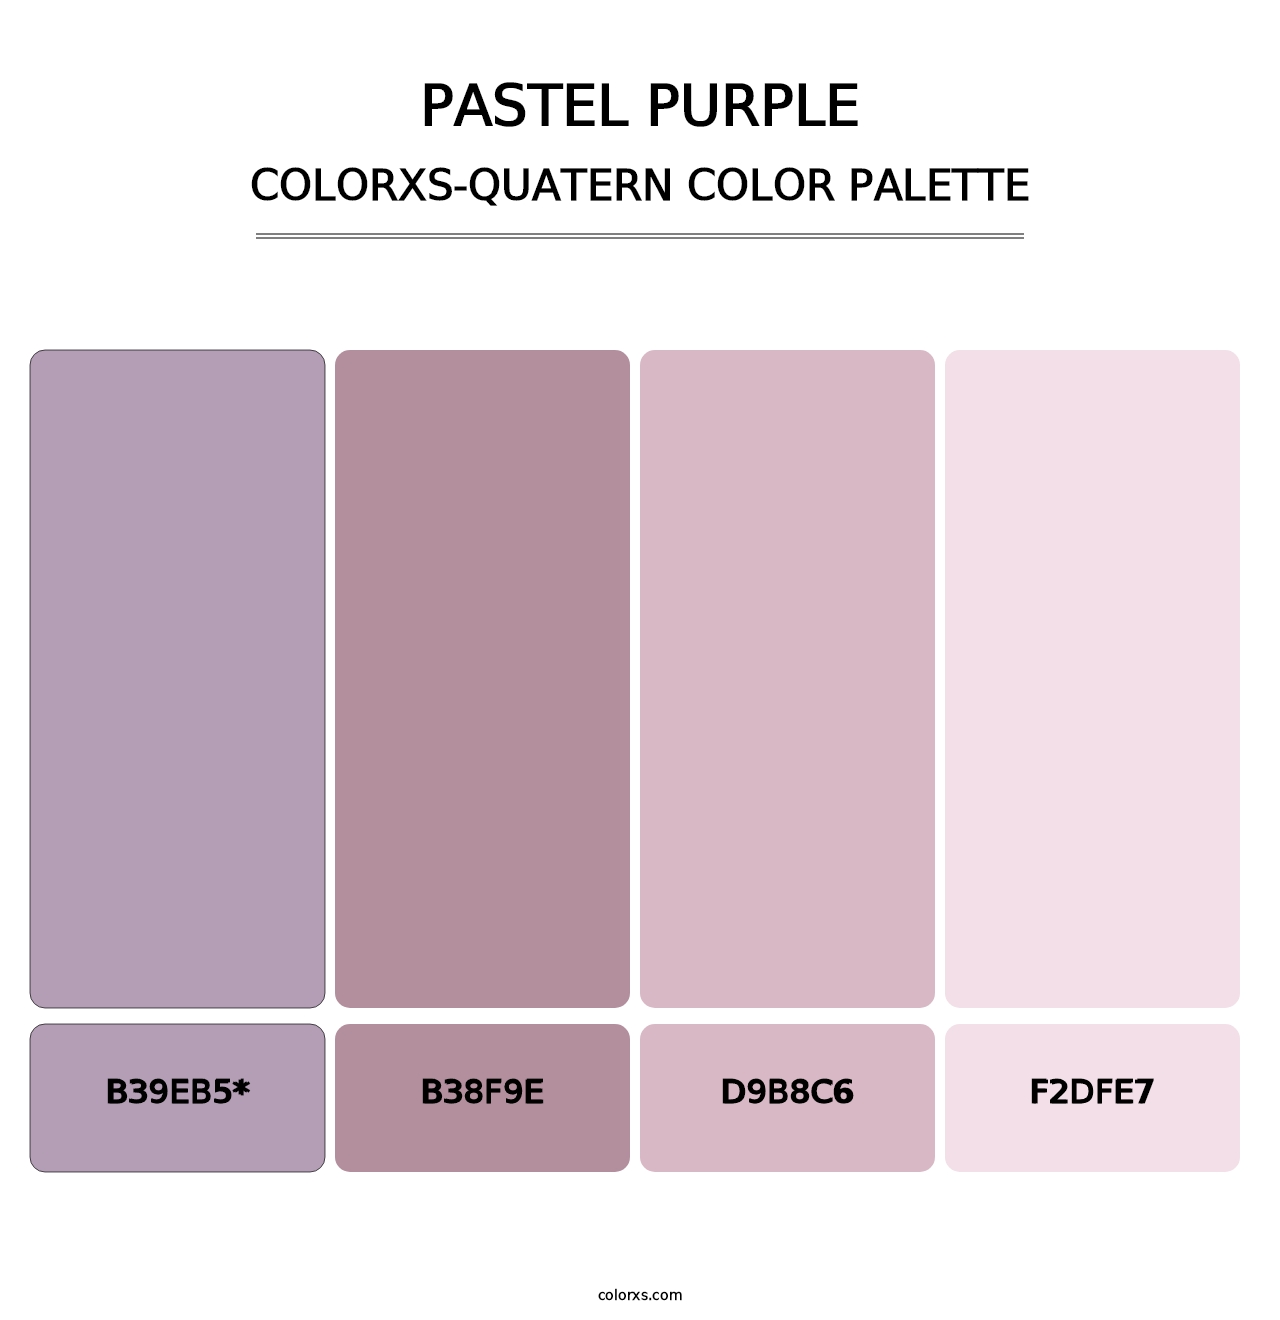 Pastel Purple - Colorxs Quatern Palette